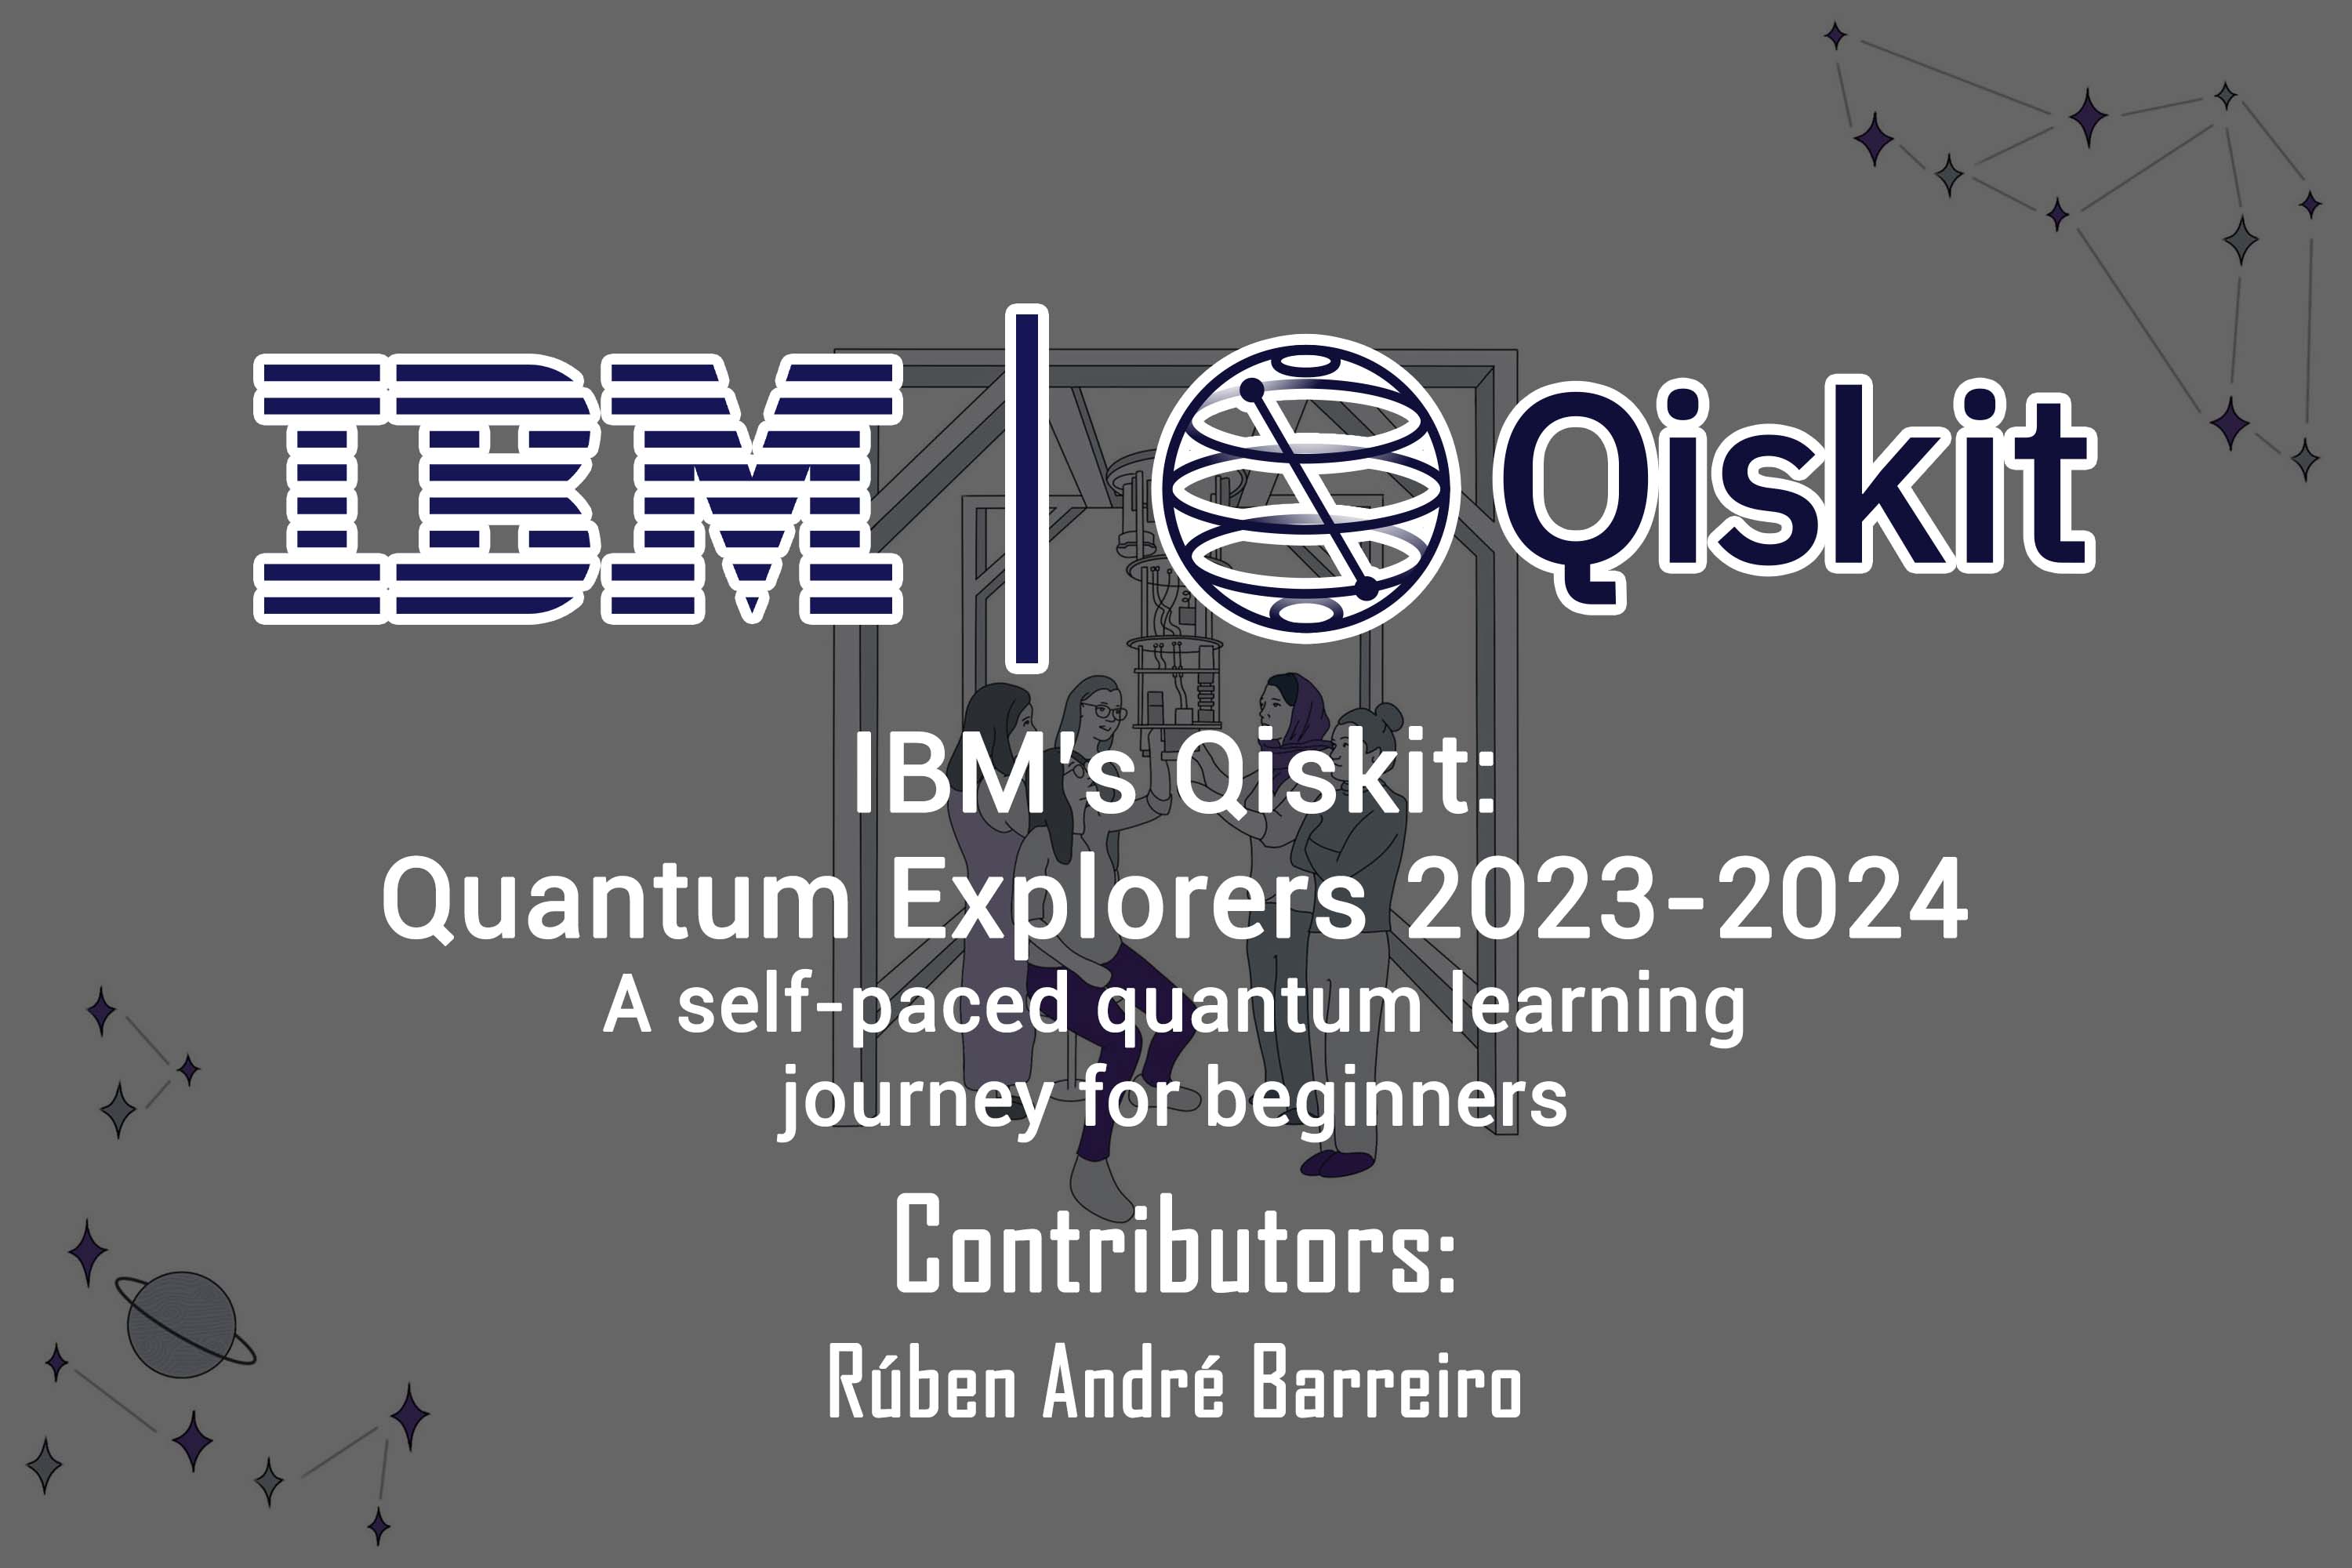 https://raw.githubusercontent.com/rubenandrebarreiro/ibm-qiskit-quantum-explorers-2023-2024/master/imgs/jpgs/banner-1.jpg